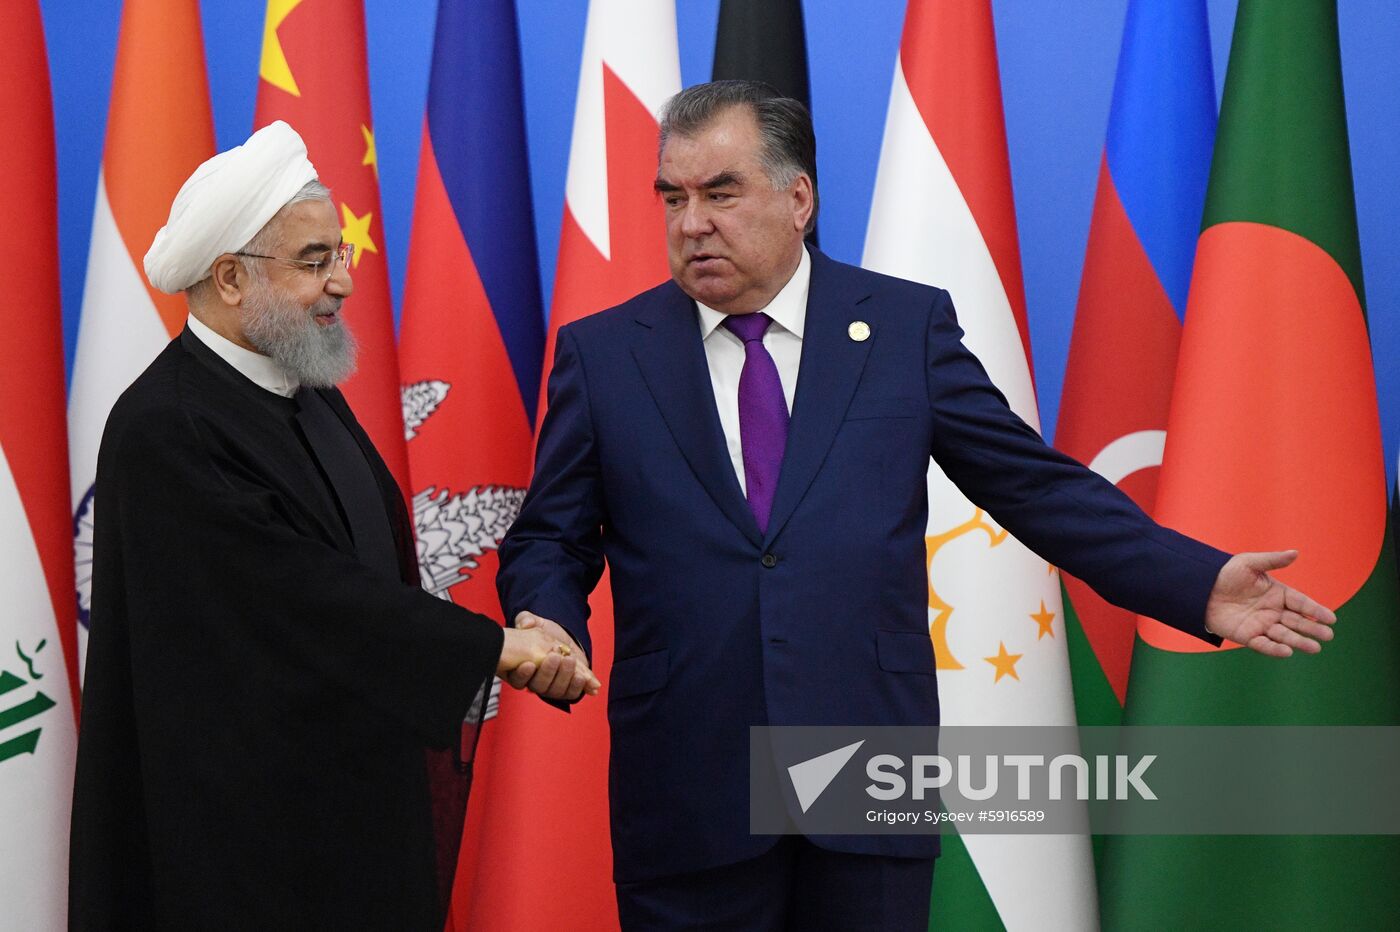 Tajikistan CICA Summit